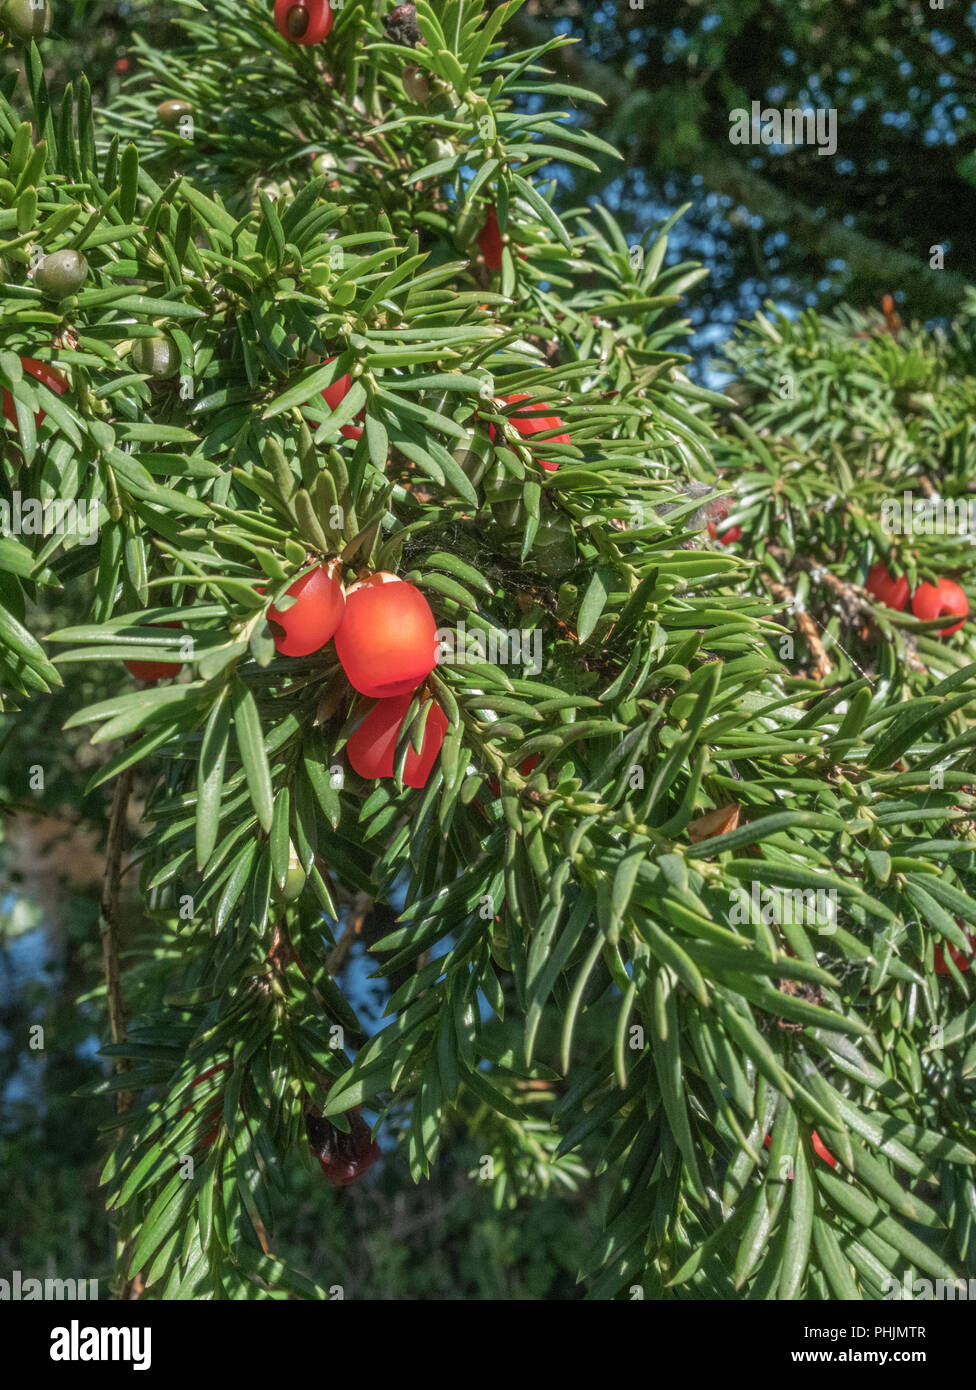 Laub und rote giftige Beeren der Eibe / Taxus whipplei Baum im  Sonnenschein. Tödliche Pflanzen in Großbritannien Stockfotografie - Alamy